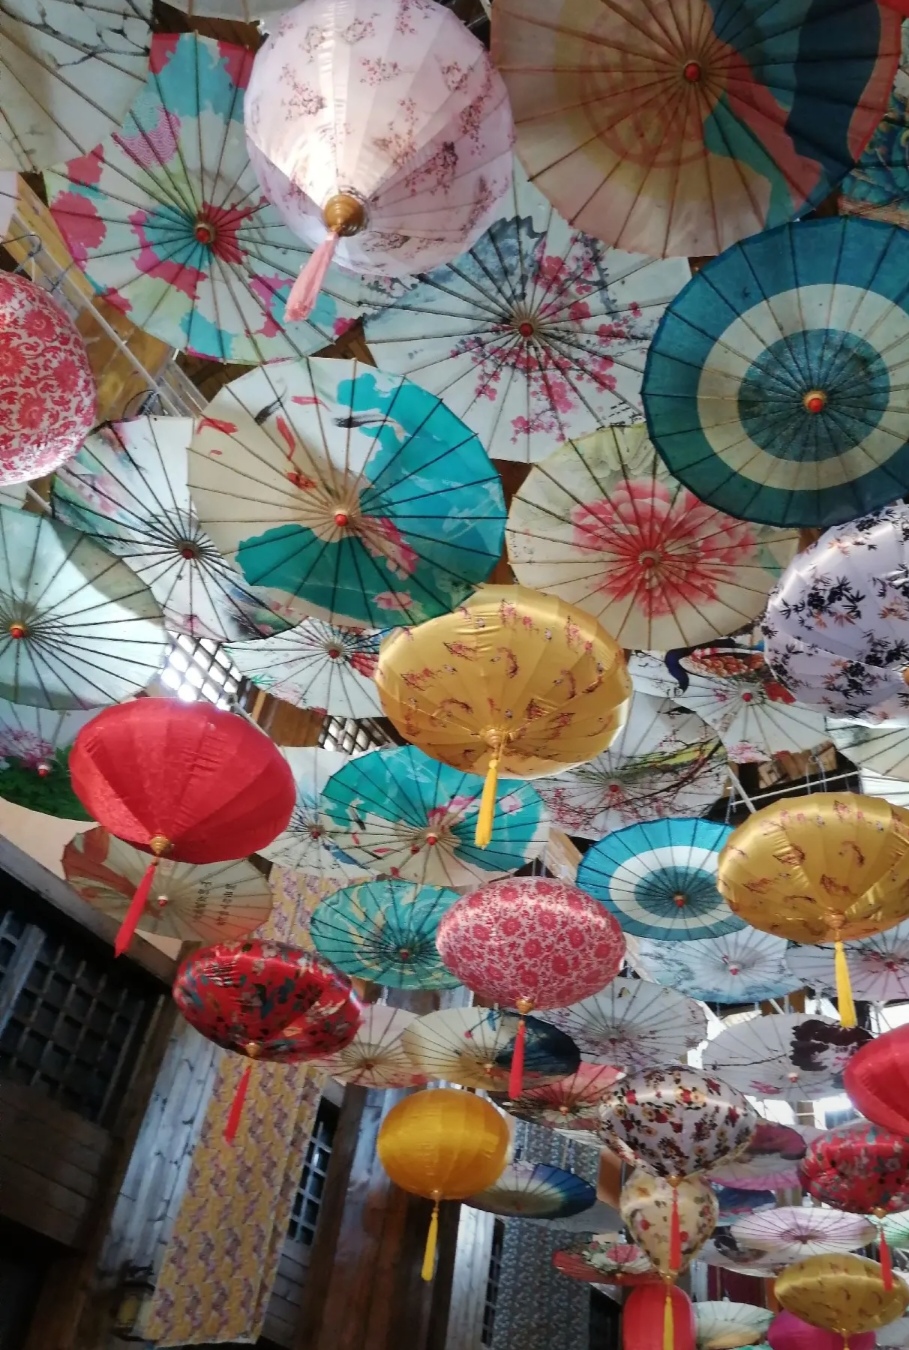 彩色伞